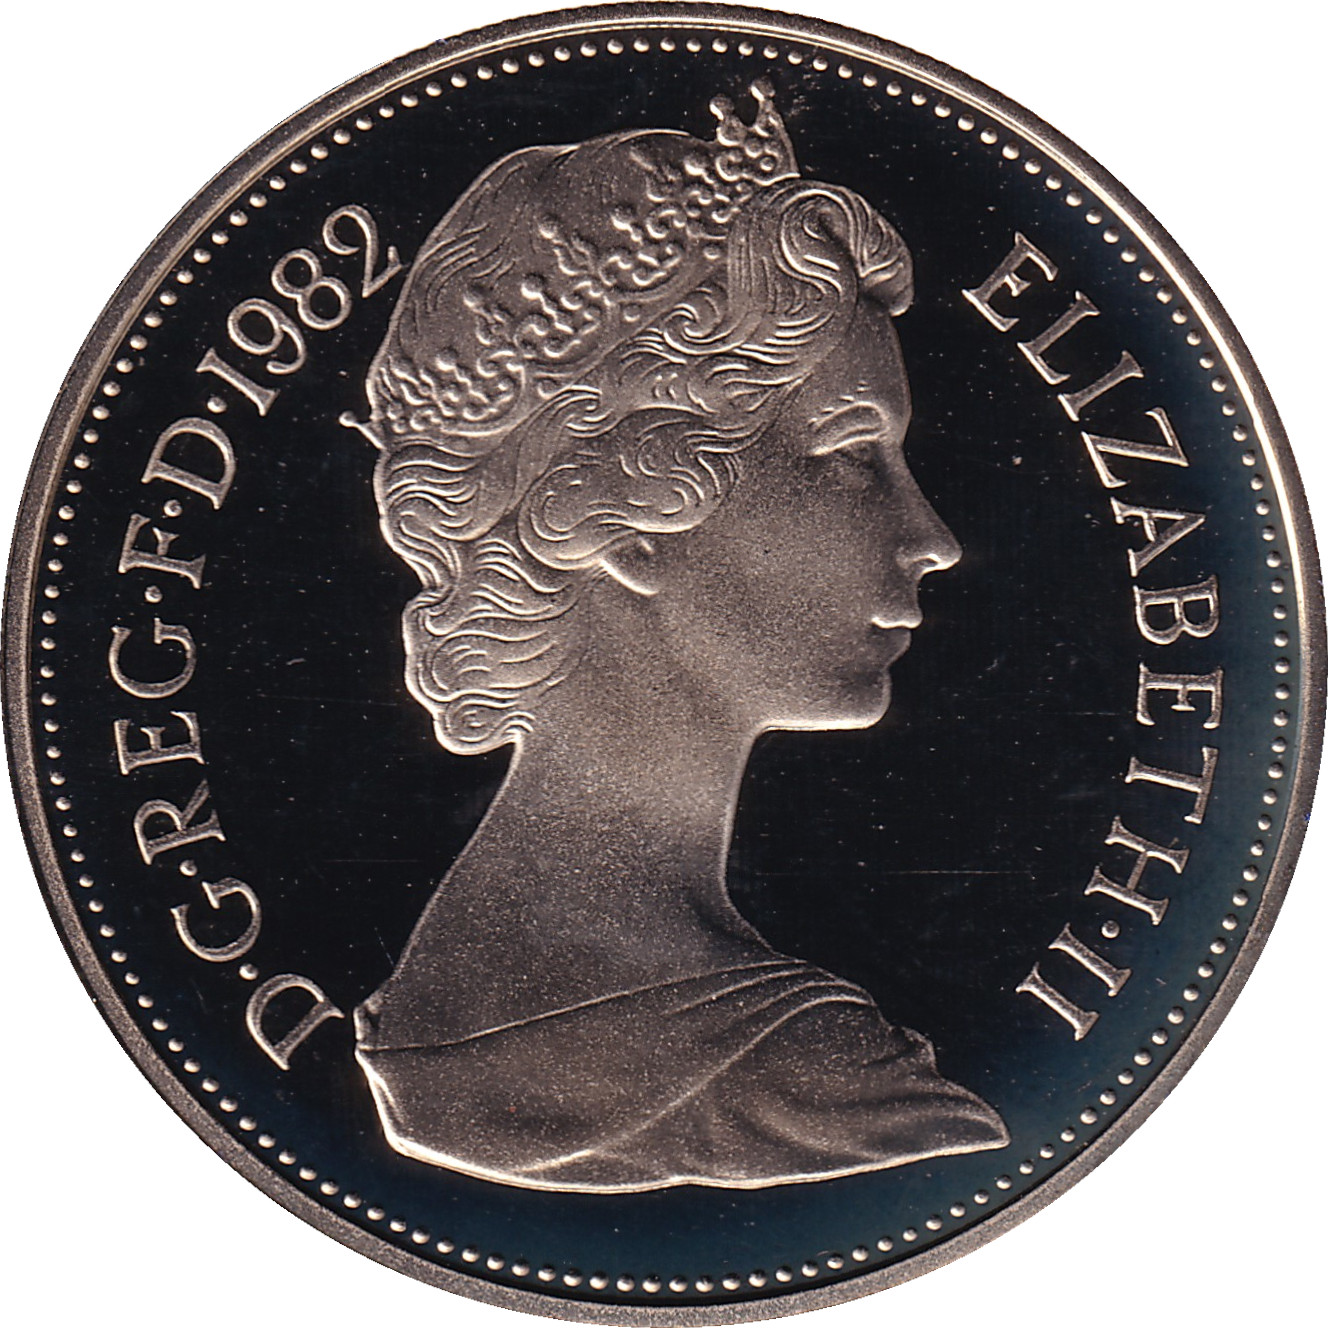 10 pence - Elizabeth II - Buste jeune